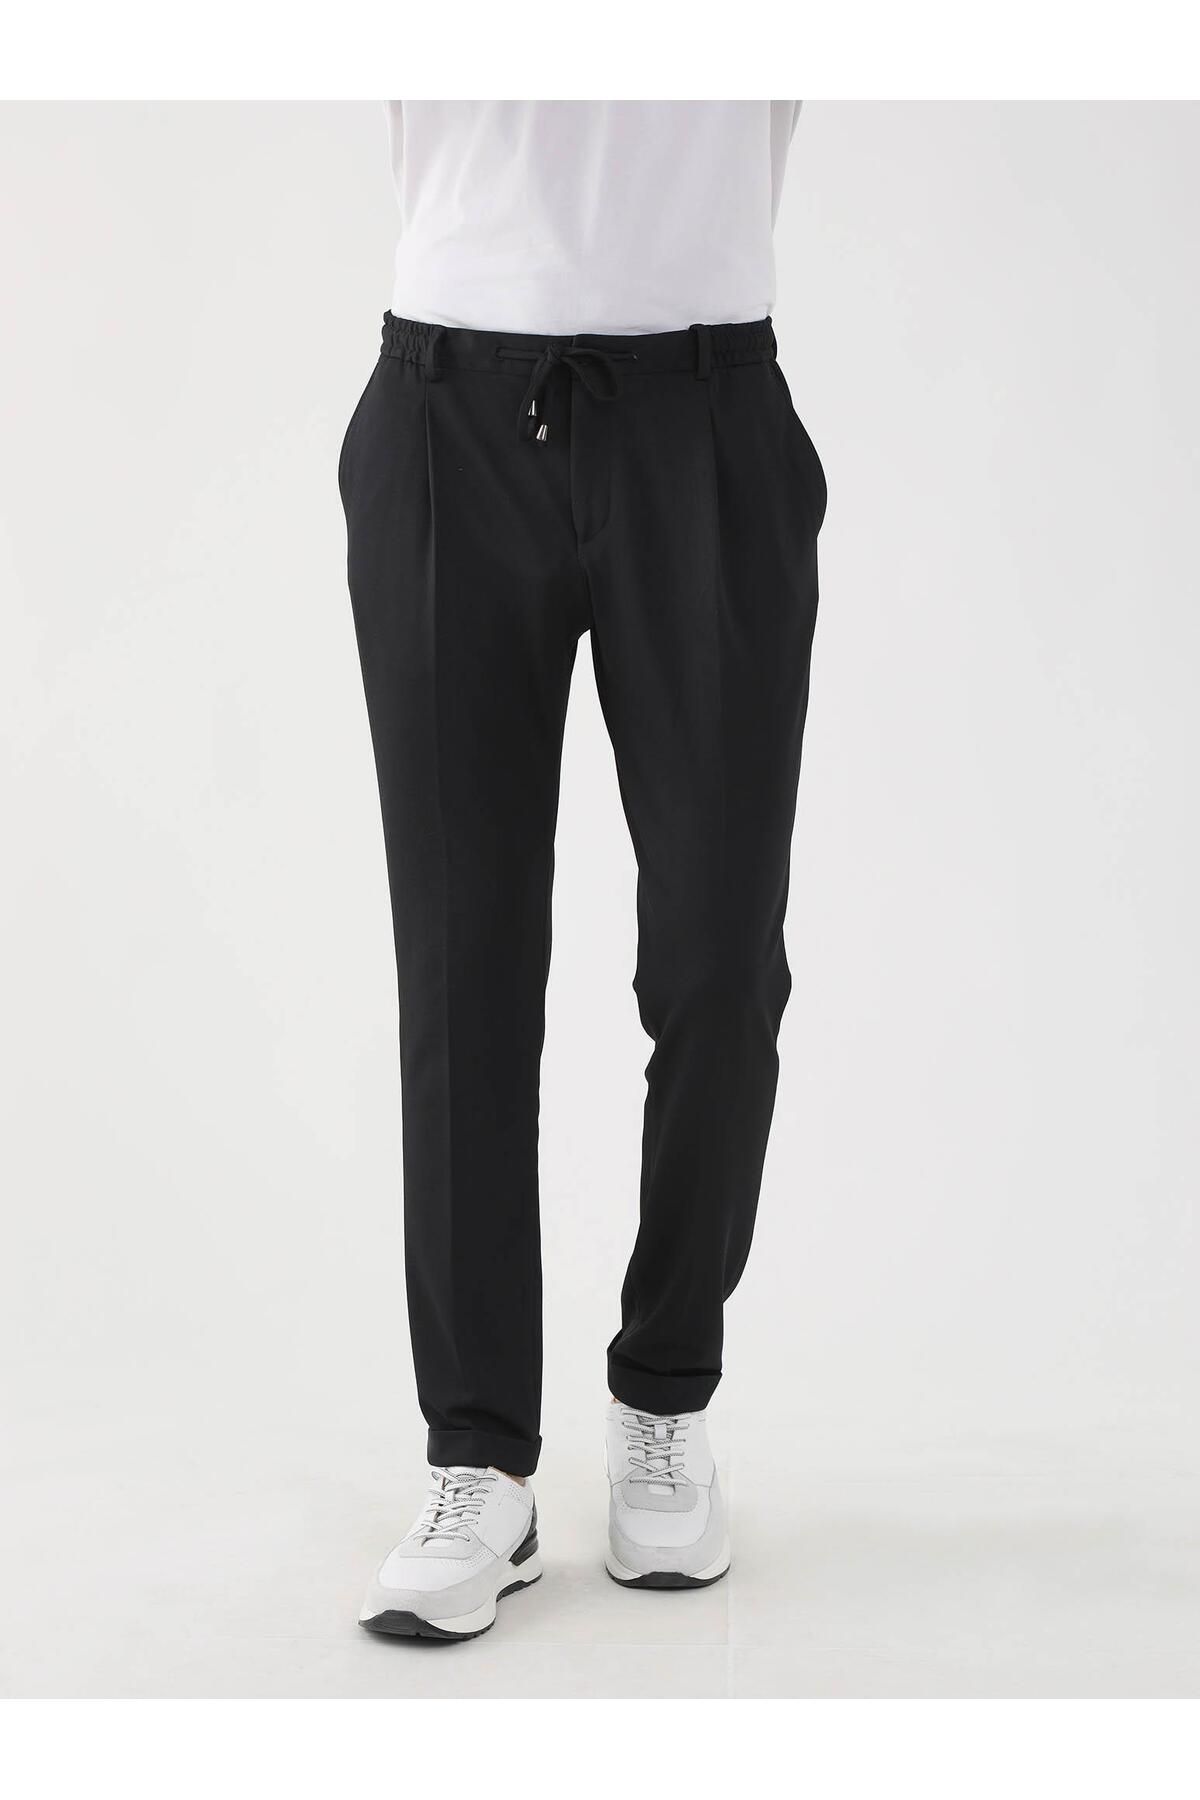 Dufy Siyah Erkek Slim Fit Düz Pantolon - 87006